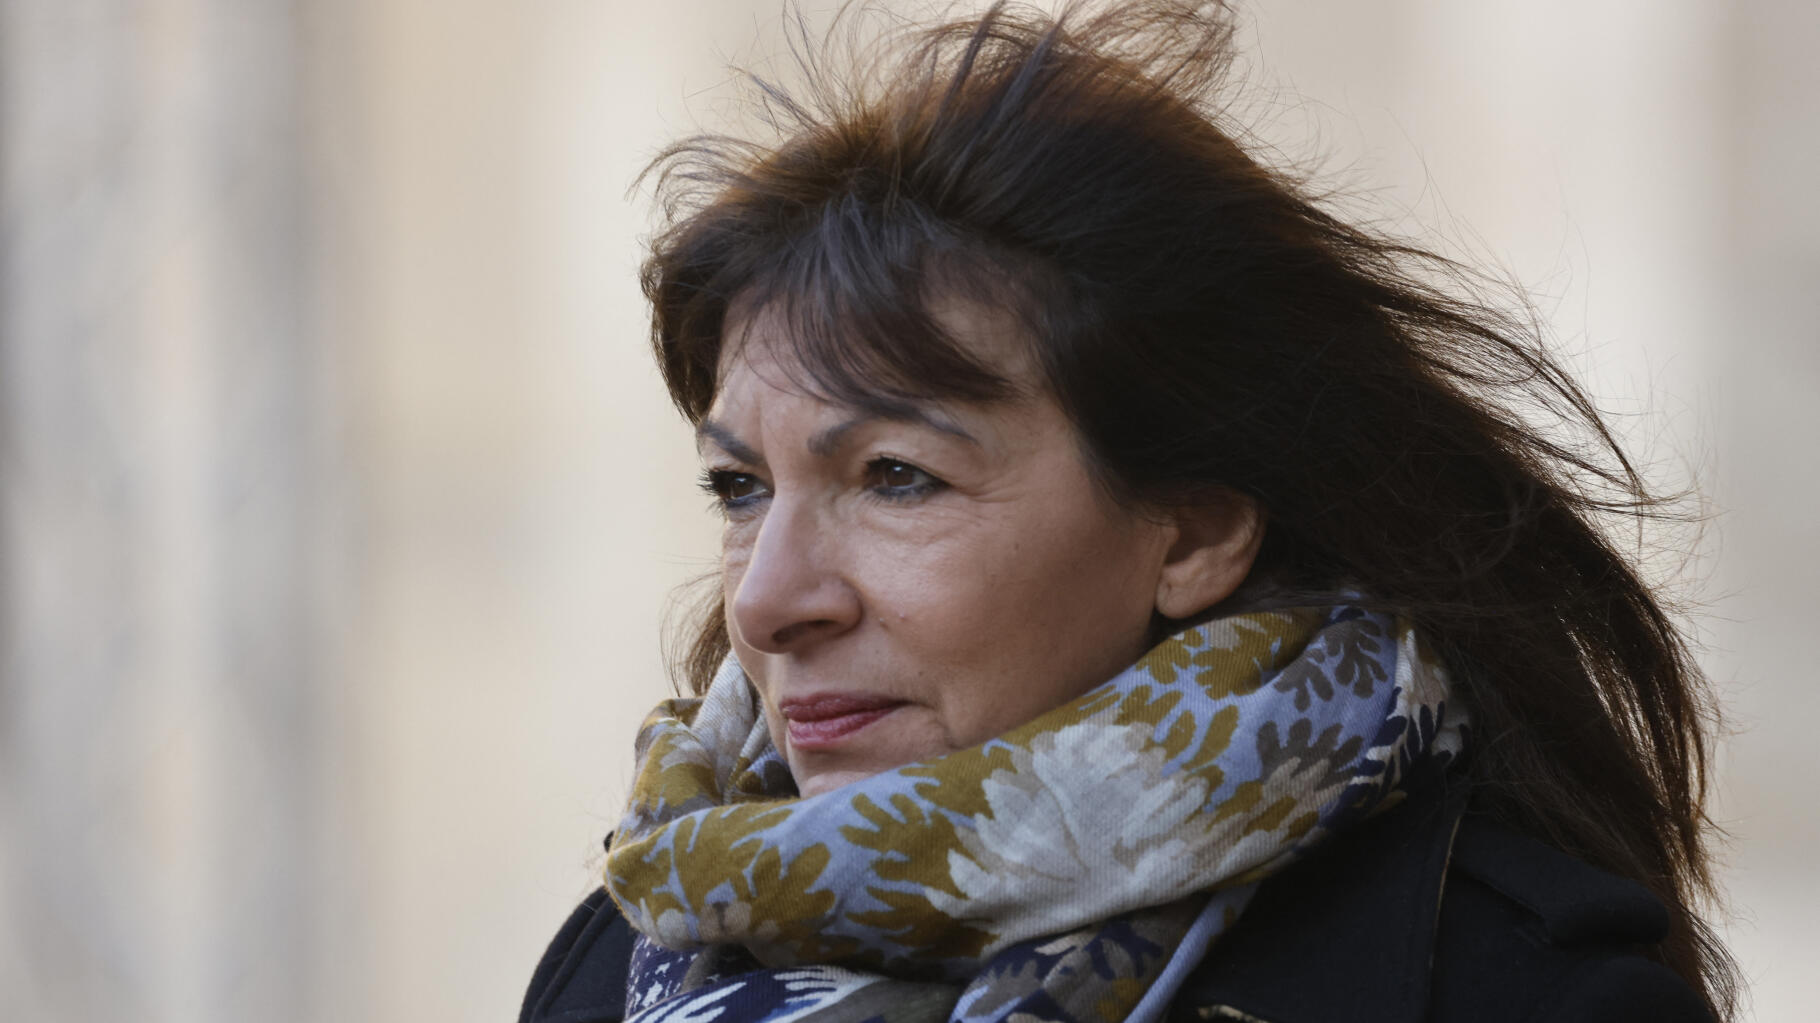   Paris saisit la justice après les insultes homophobes des ultras du PSG visant Anne Hidalgo  